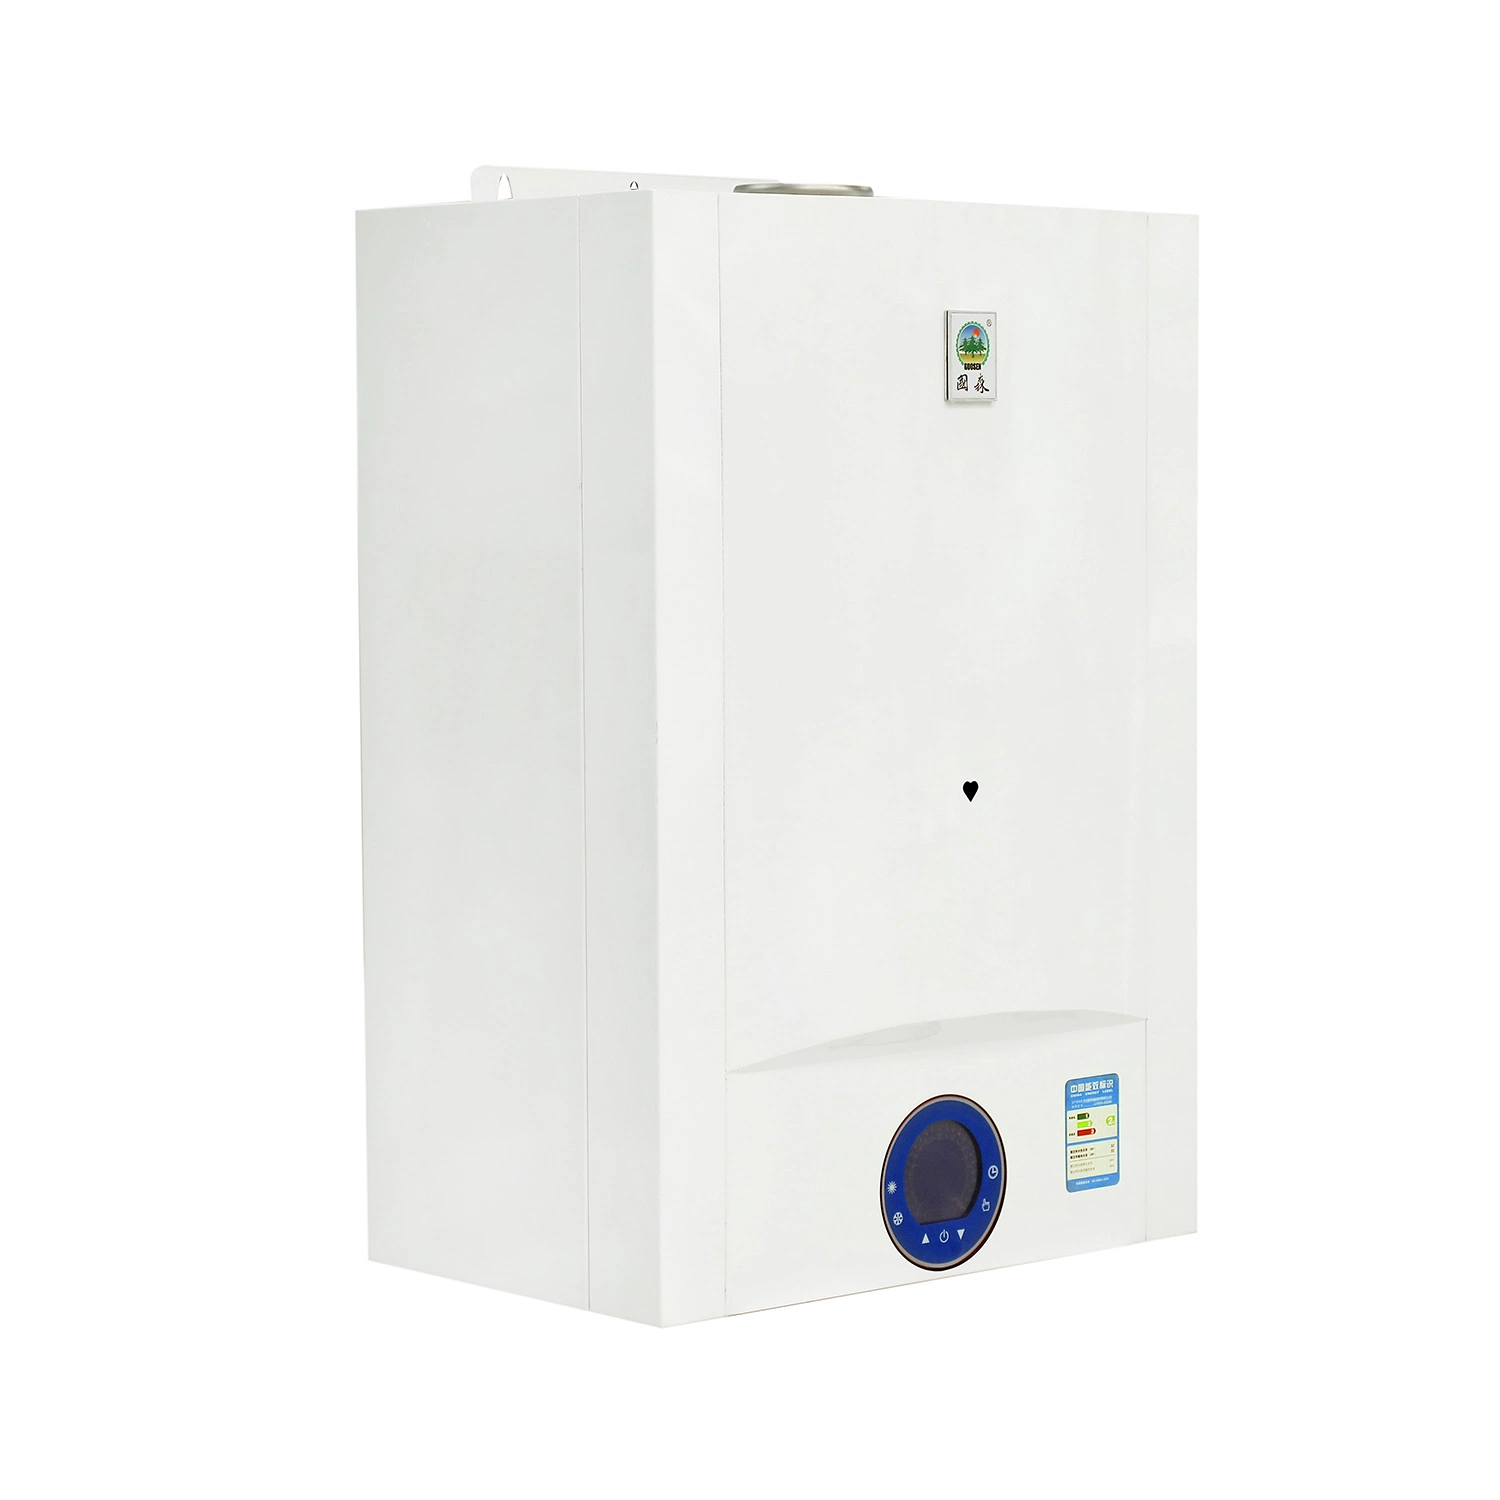 15,4kg/min hogar premezclada Wall-Hung completamente de condensación calderas de gas para calefacción y agua caliente sanitaria